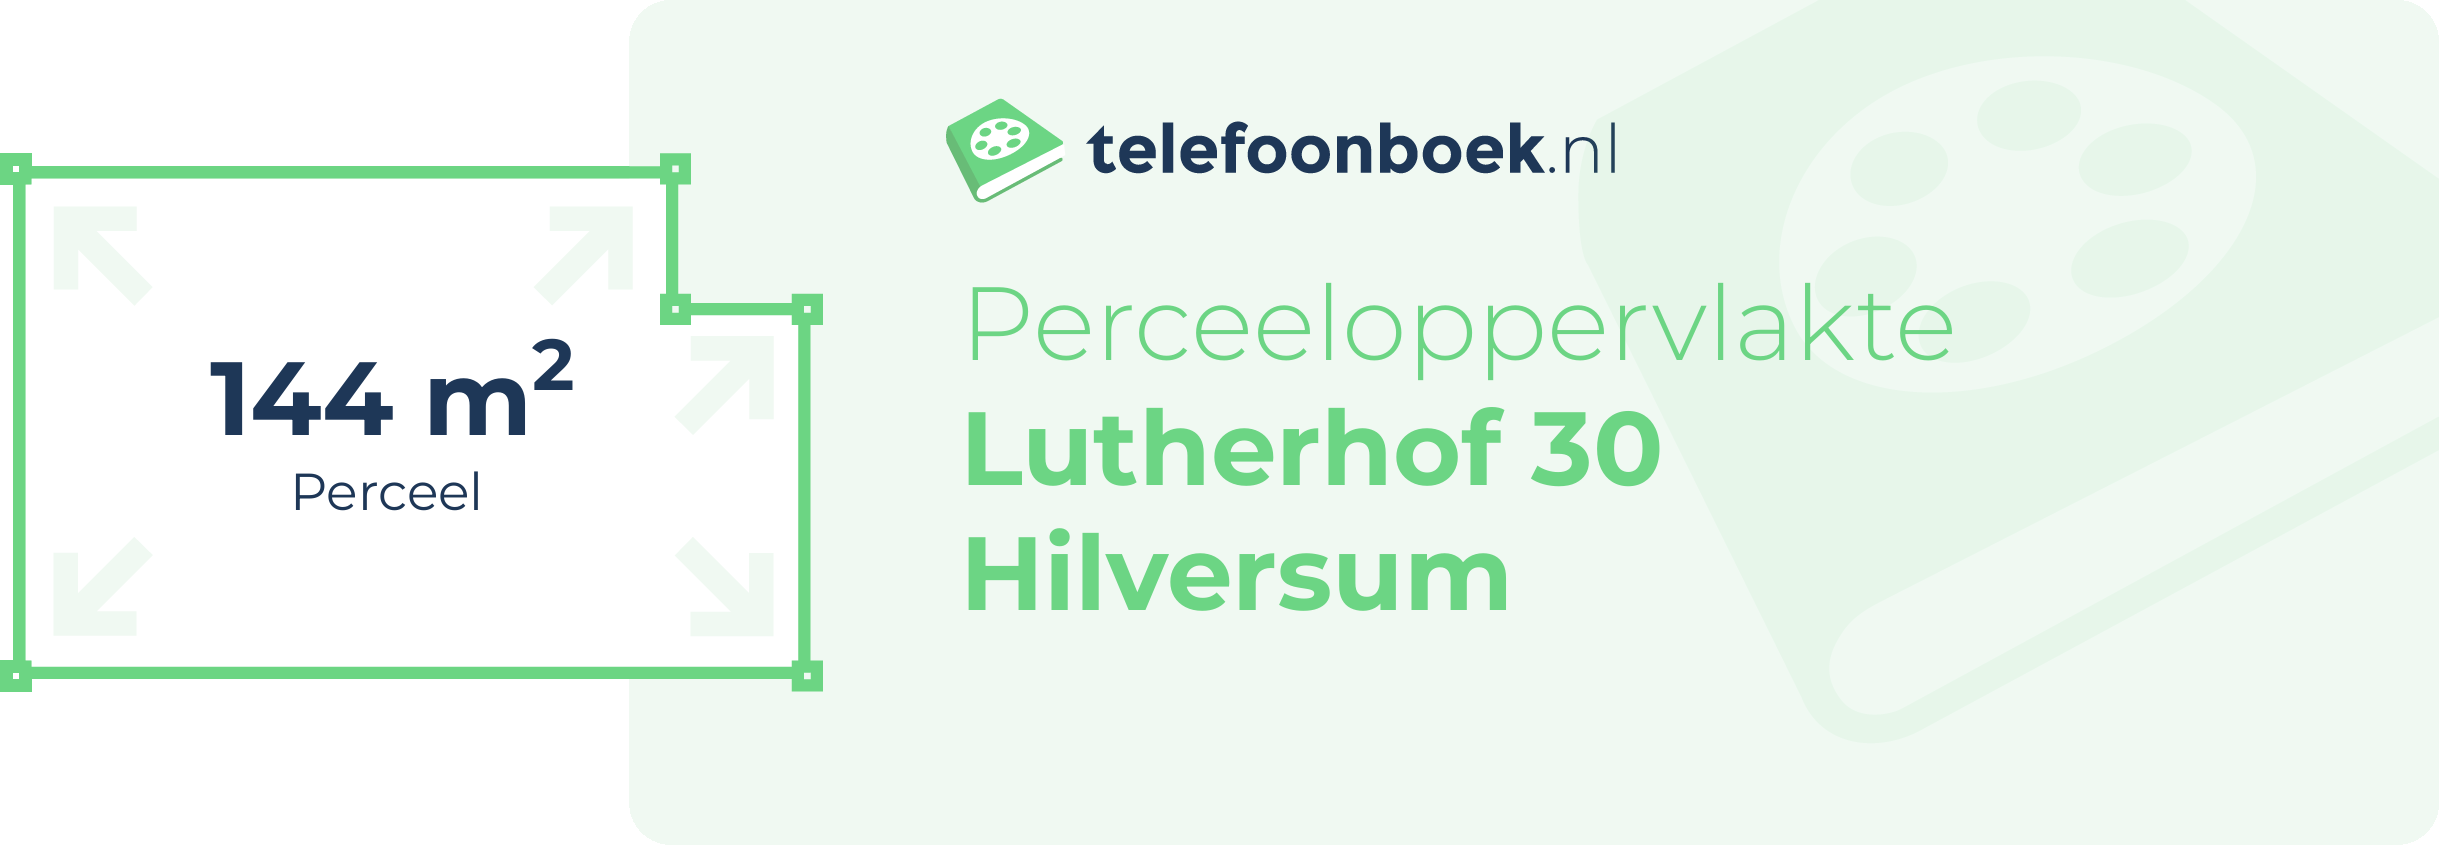 Perceeloppervlakte Lutherhof 30 Hilversum